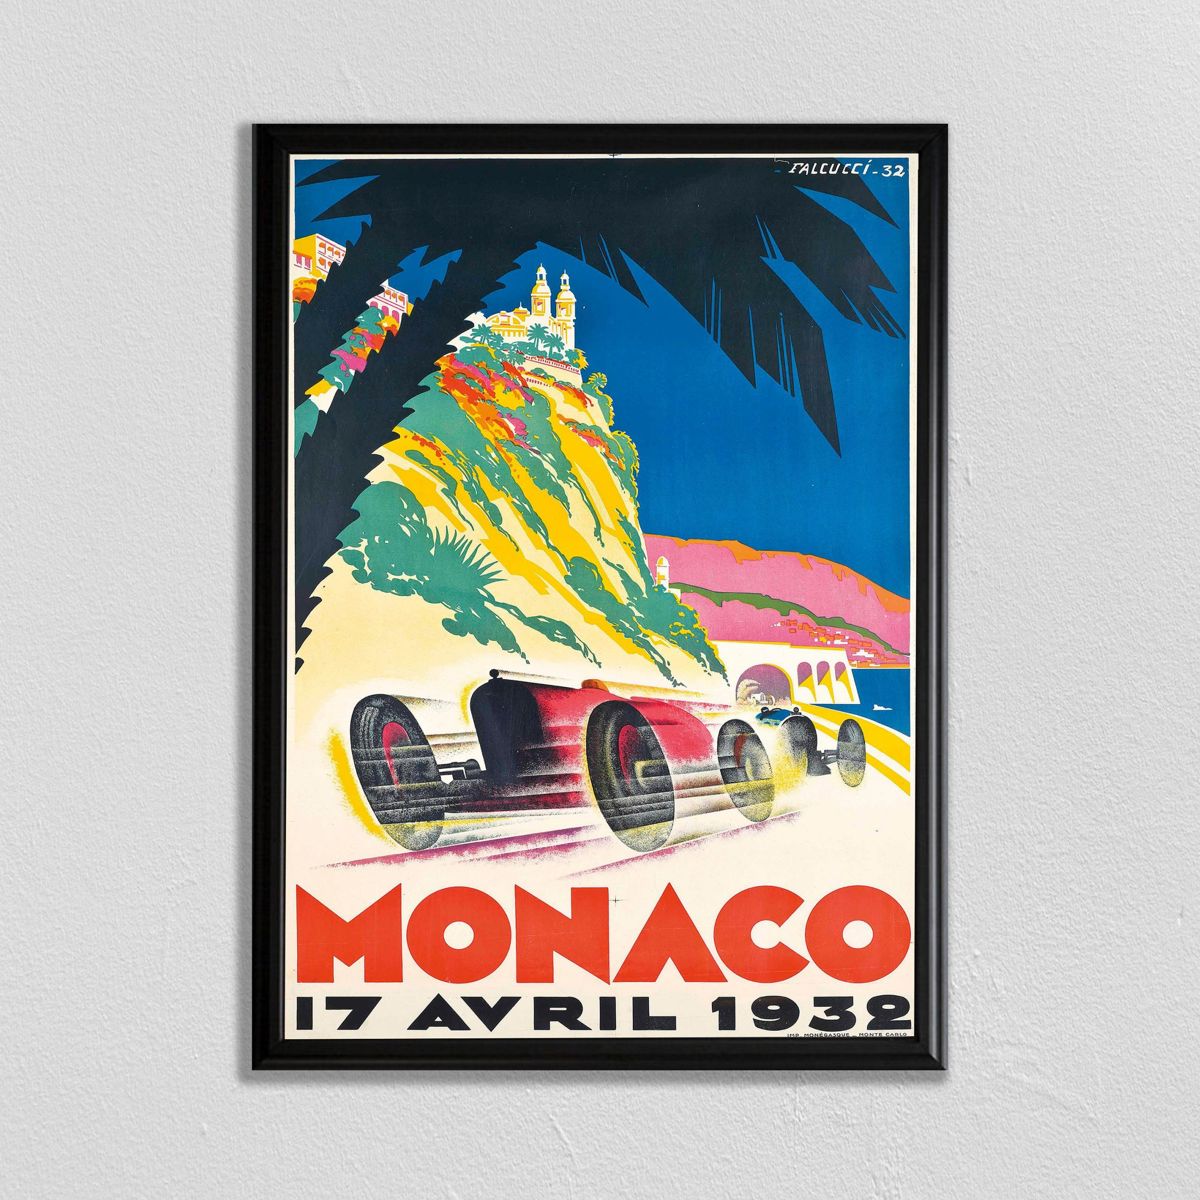 F1 Racing, Affiche De France, Monaco Grand Prix, Automobile Art, Paris